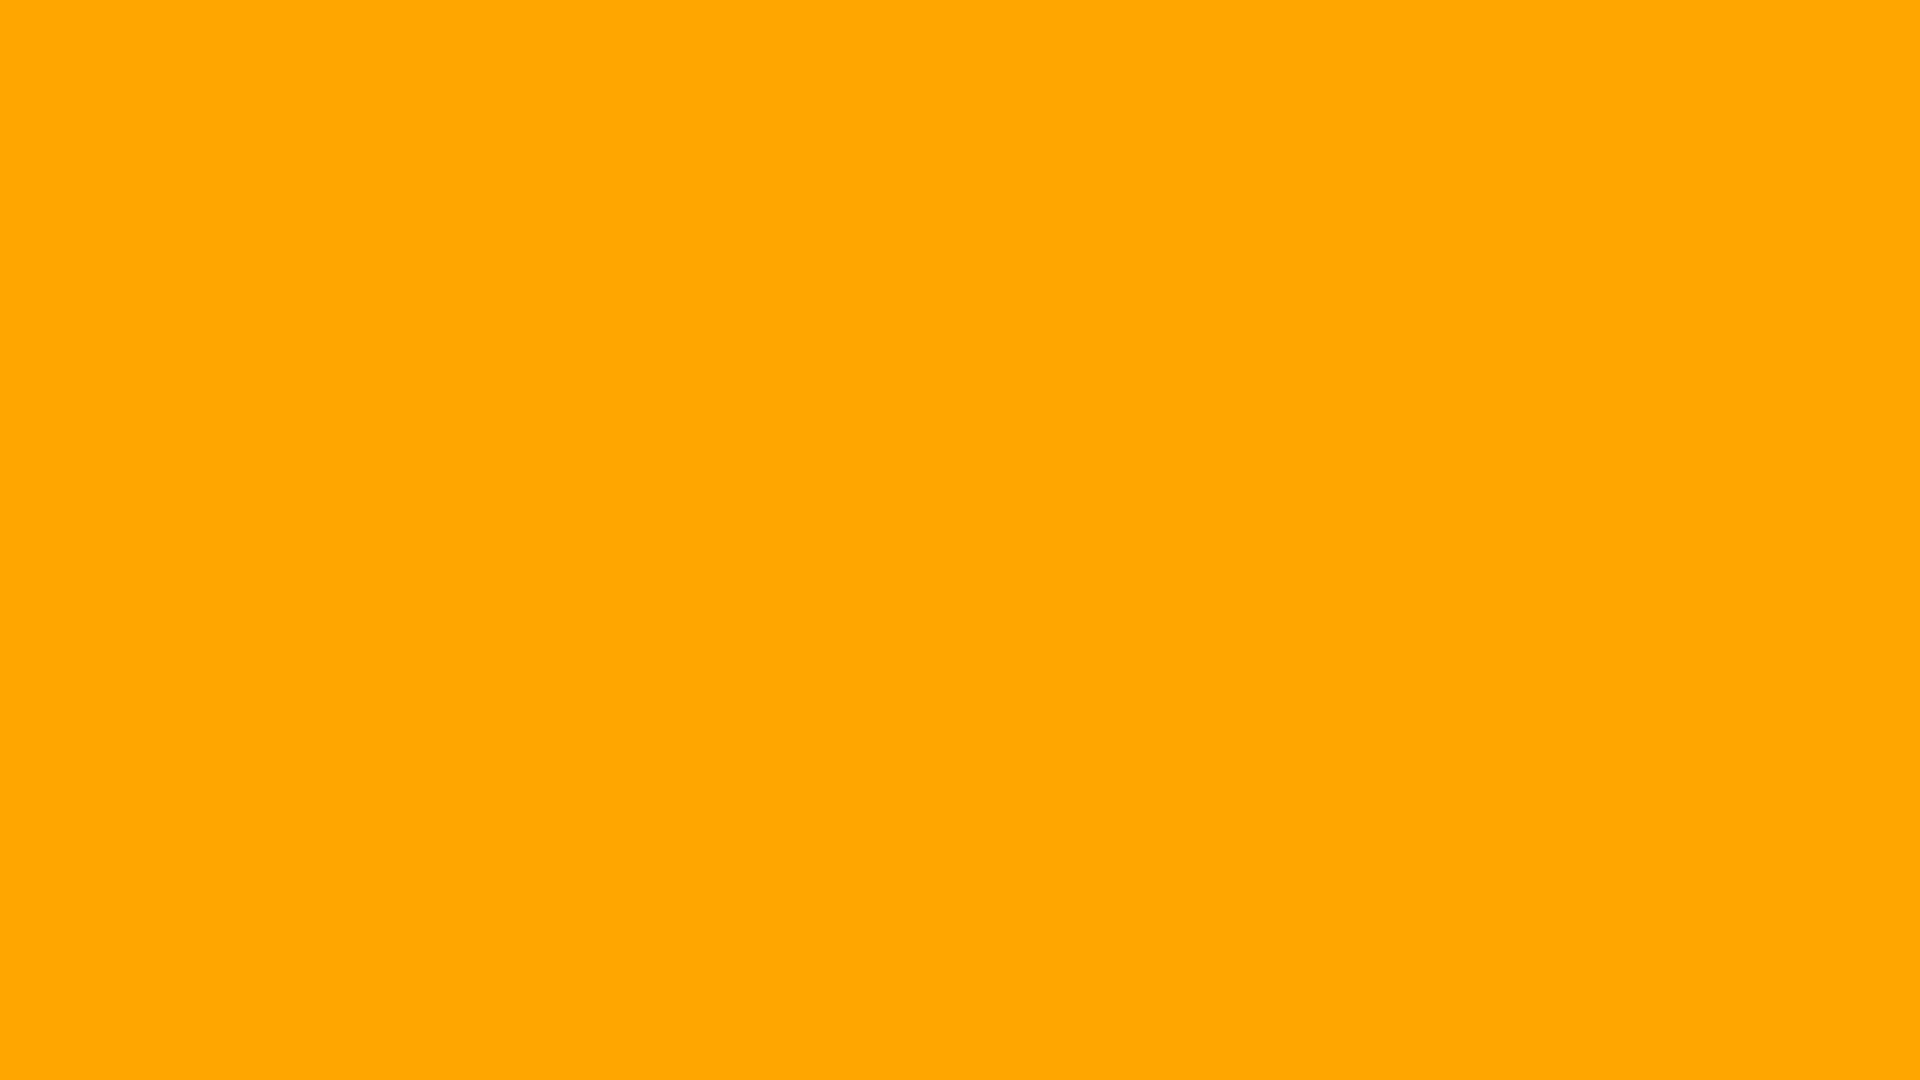 Nền màu cam đơn sắc cực kỳ gợi cảm và sang trọng. Điều này sẽ giúp cho bạn có được một không gian thật mềm mại và ấm áp. Sự đơn giản nhưng đầy ấn tượng của nền màu cam đơn sắc sẽ giúp cho thiết kế của bạn tinh tế hơn bao giờ hết. Hãy tham khảo ảnh này để truyền tải thông điệp của bạn.